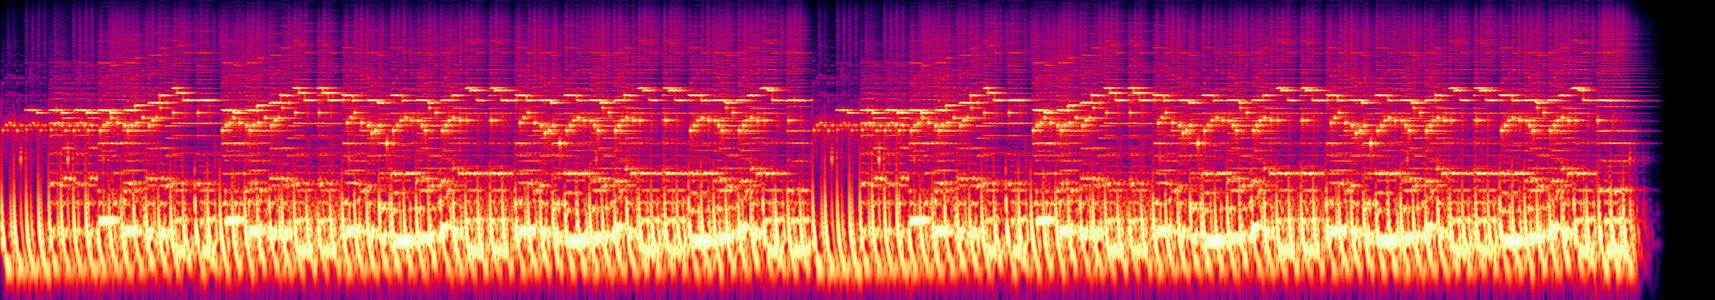 Dance from Noah - Spectrogram.jpg